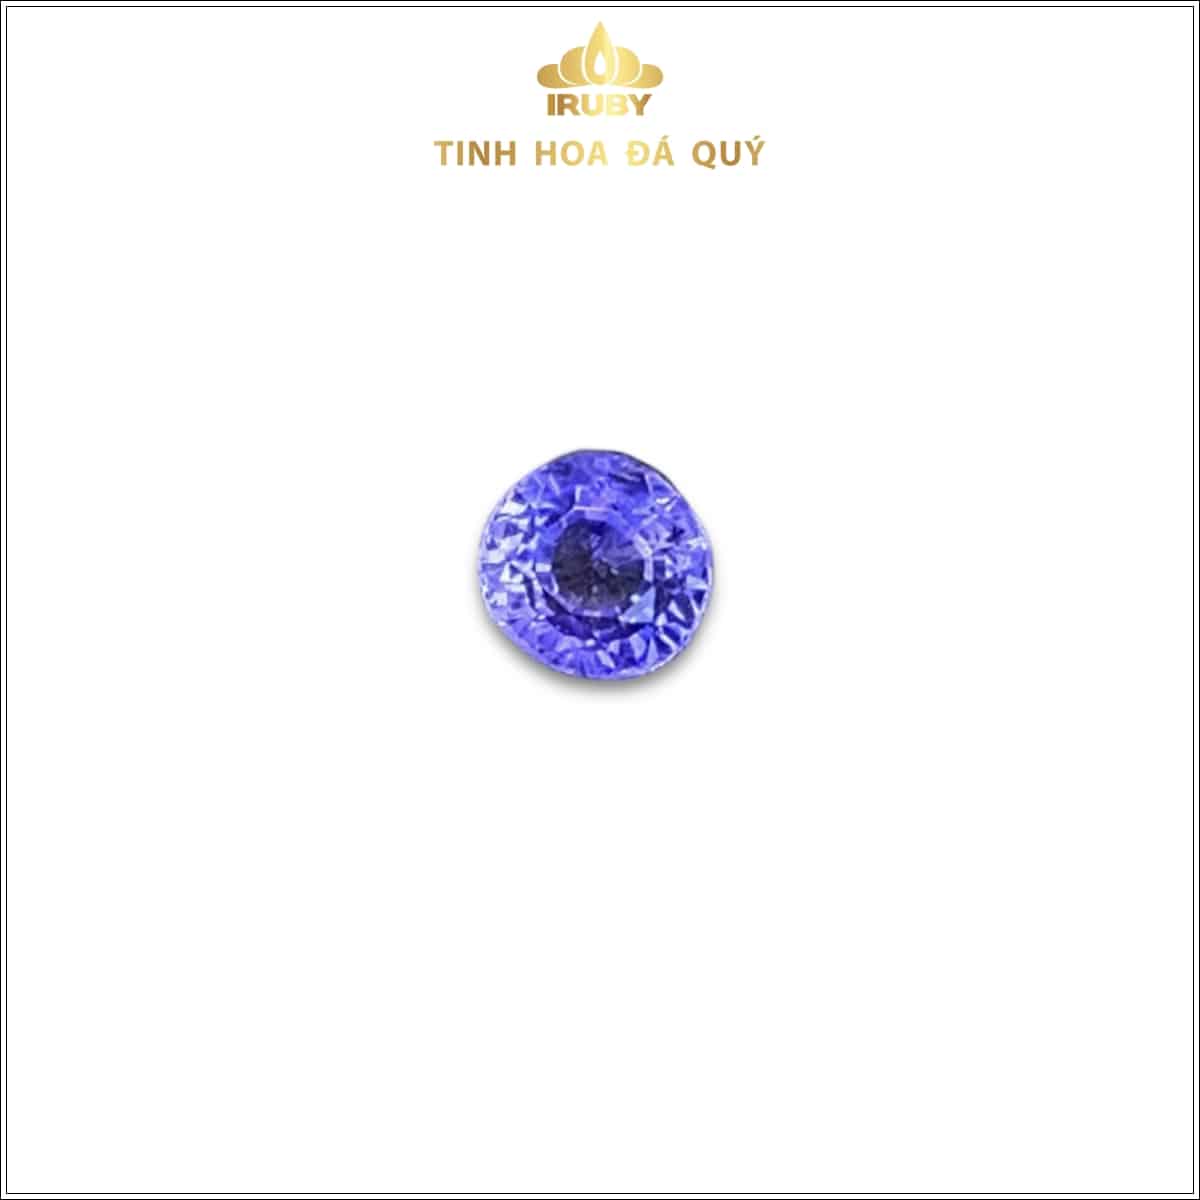 Viên Sapphire màu xanh lam hoàng gia 0,61ct - IRSP 234061